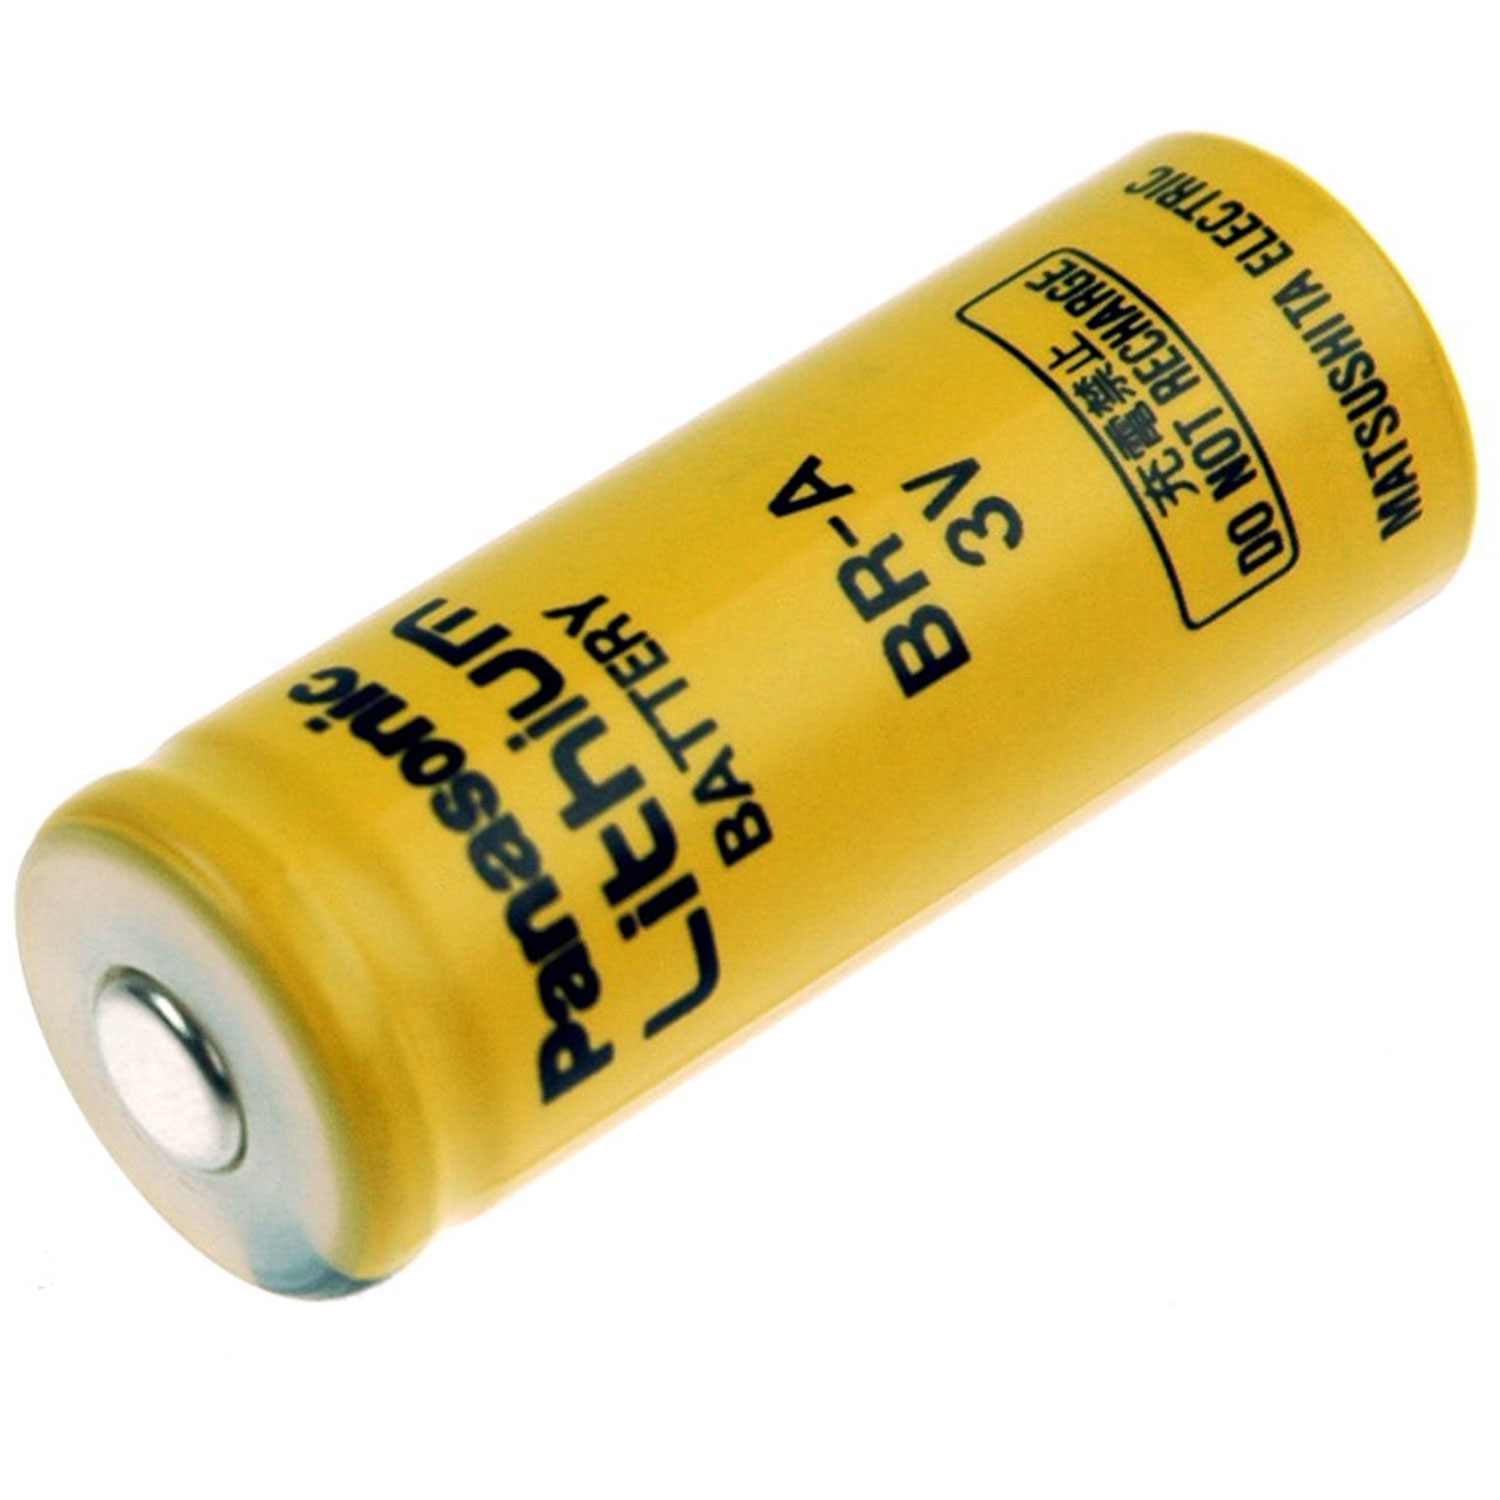 Panasonic Lithium Batterie BR-A mit 3,0Volt